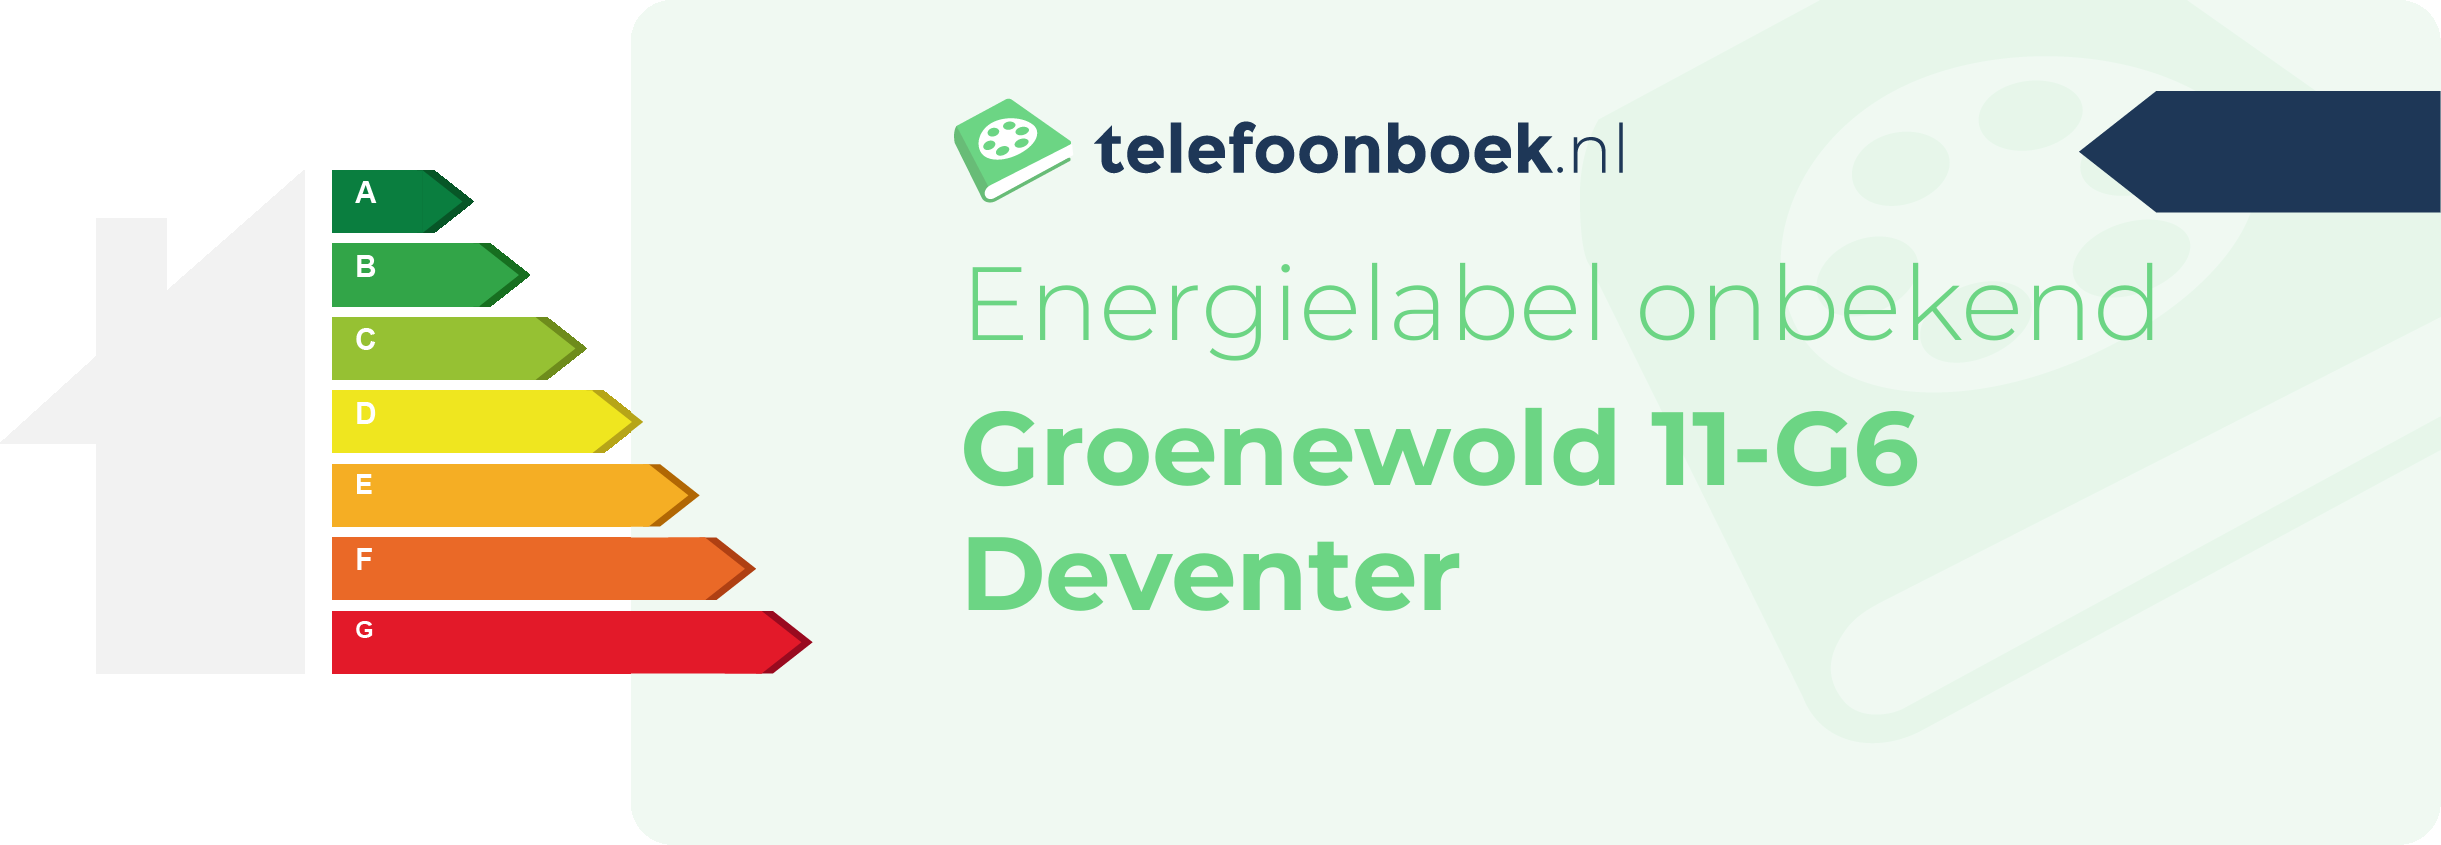 Energielabel Groenewold 11-G6 Deventer